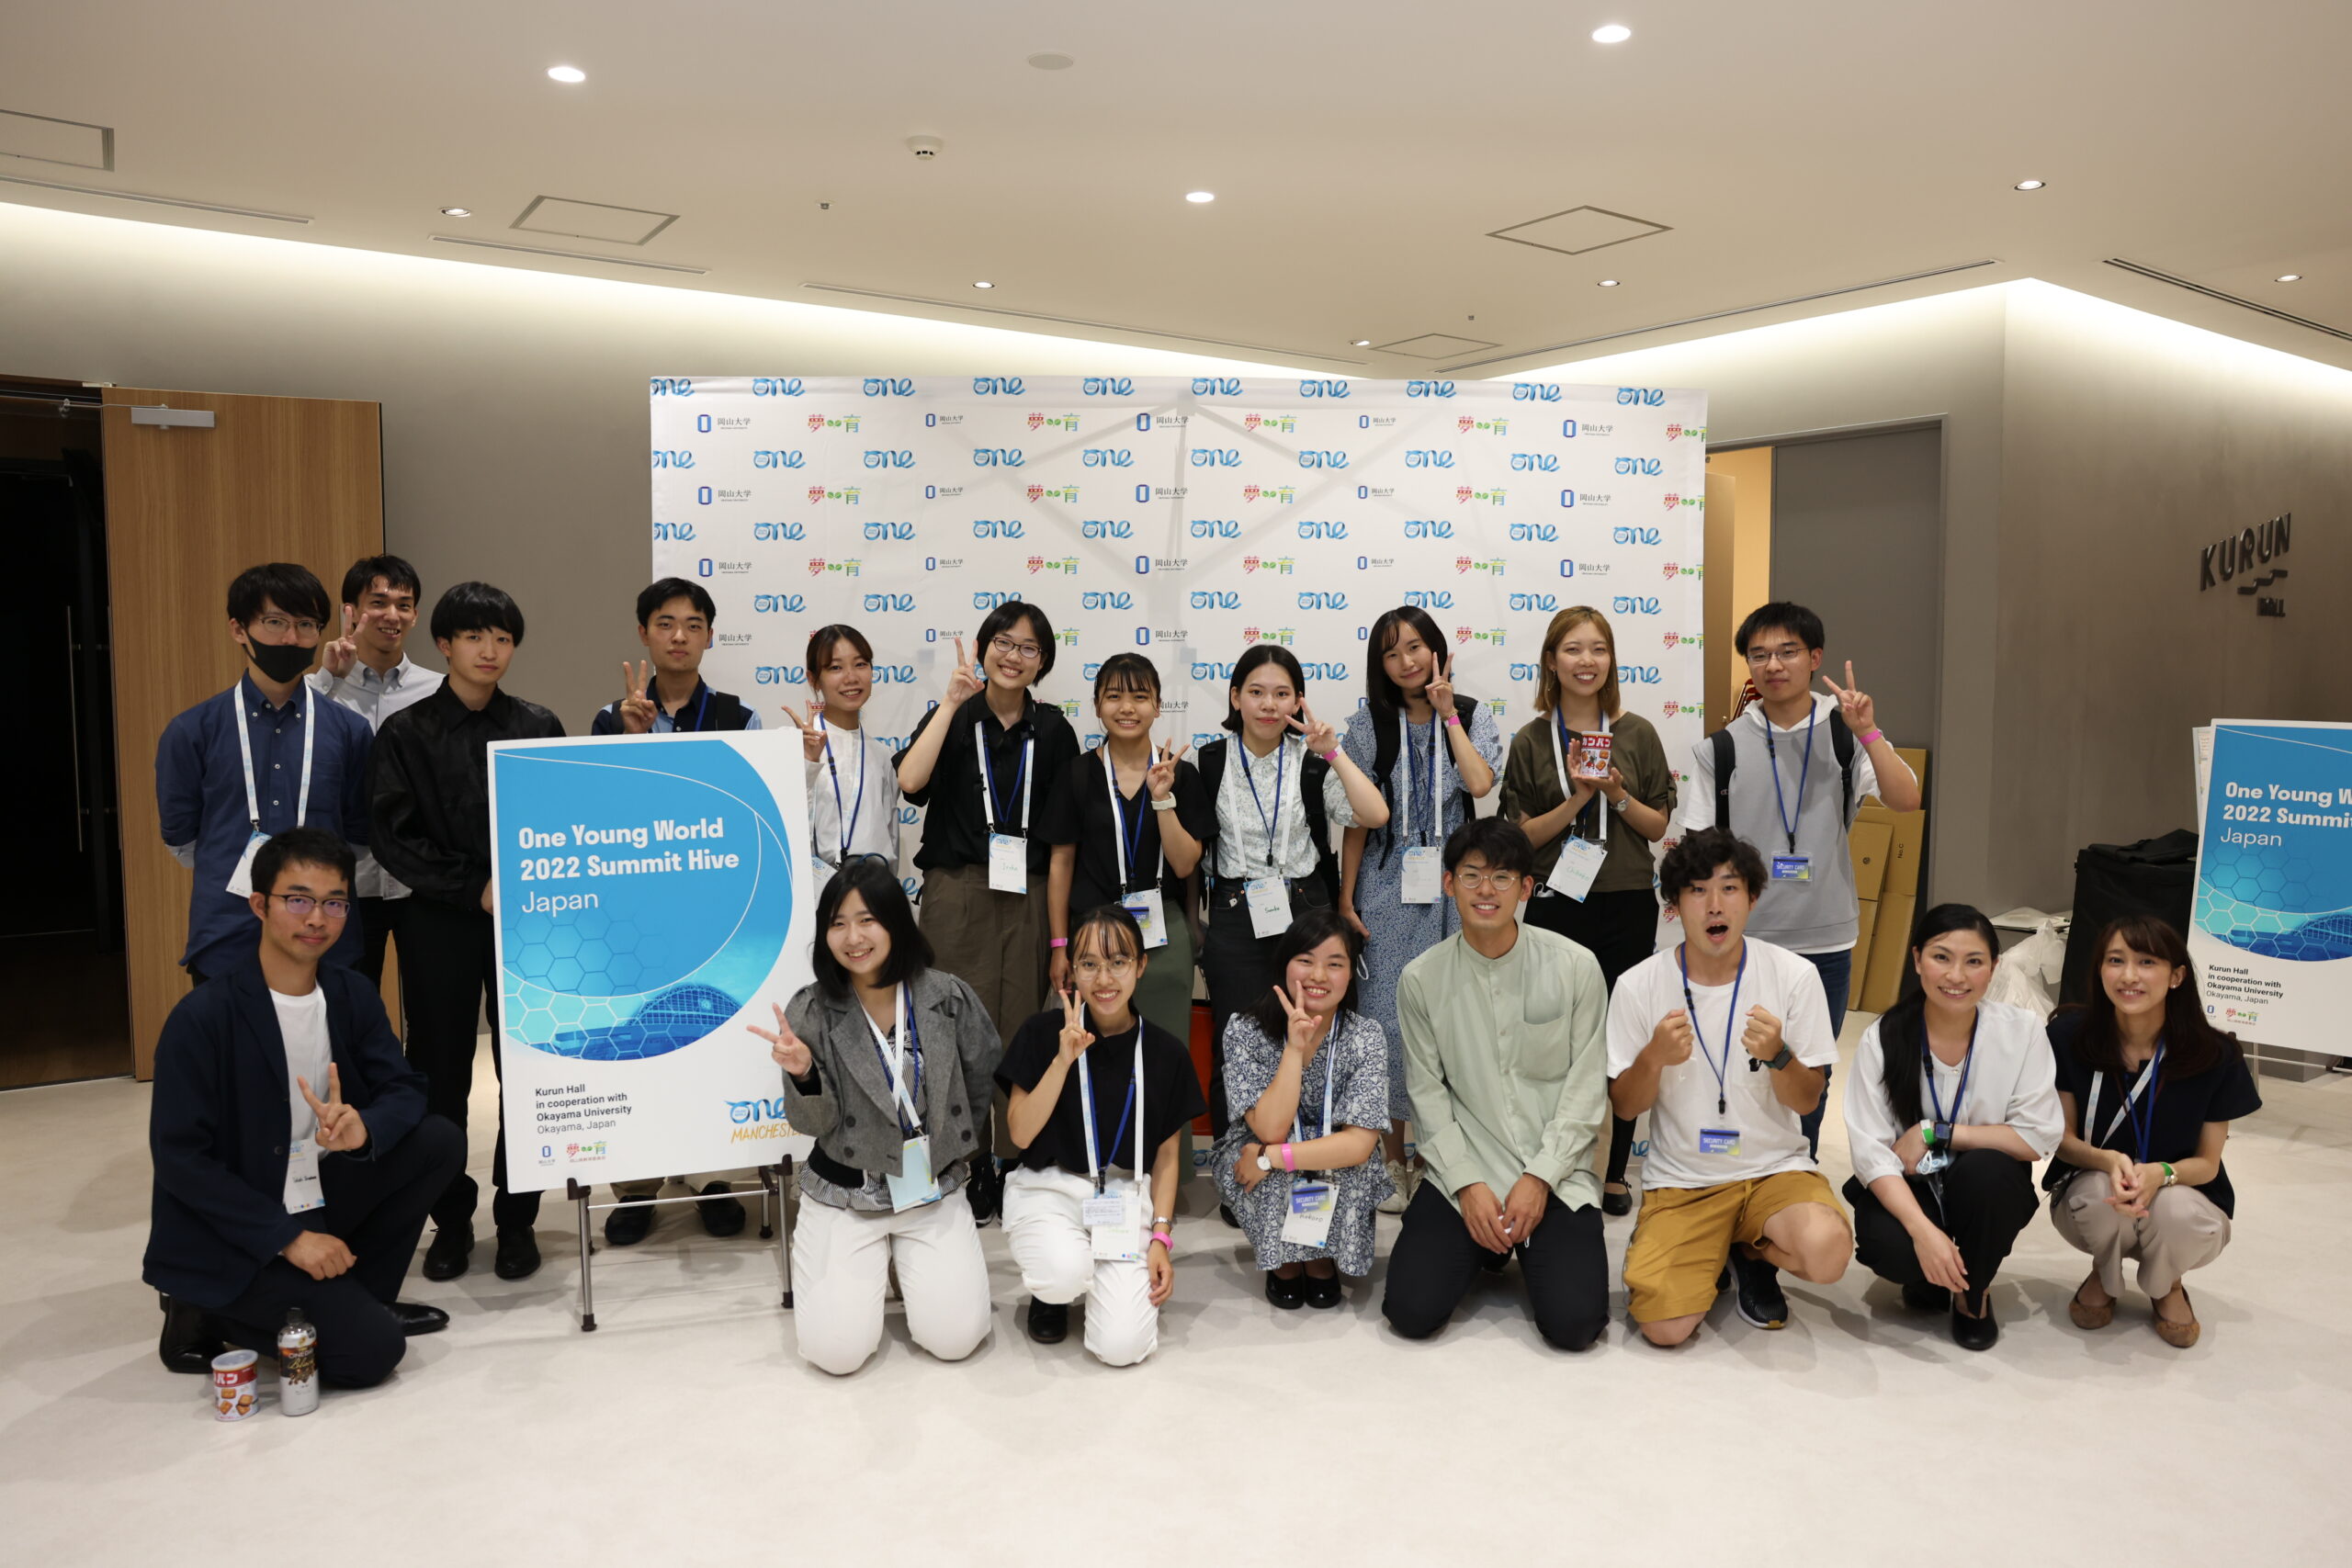 本学学生によるOkayama Hive実行委員会（前列右から4人目が岩田さん、後列右から3人目が出口さん）※撮影時のみマスクを外しました。